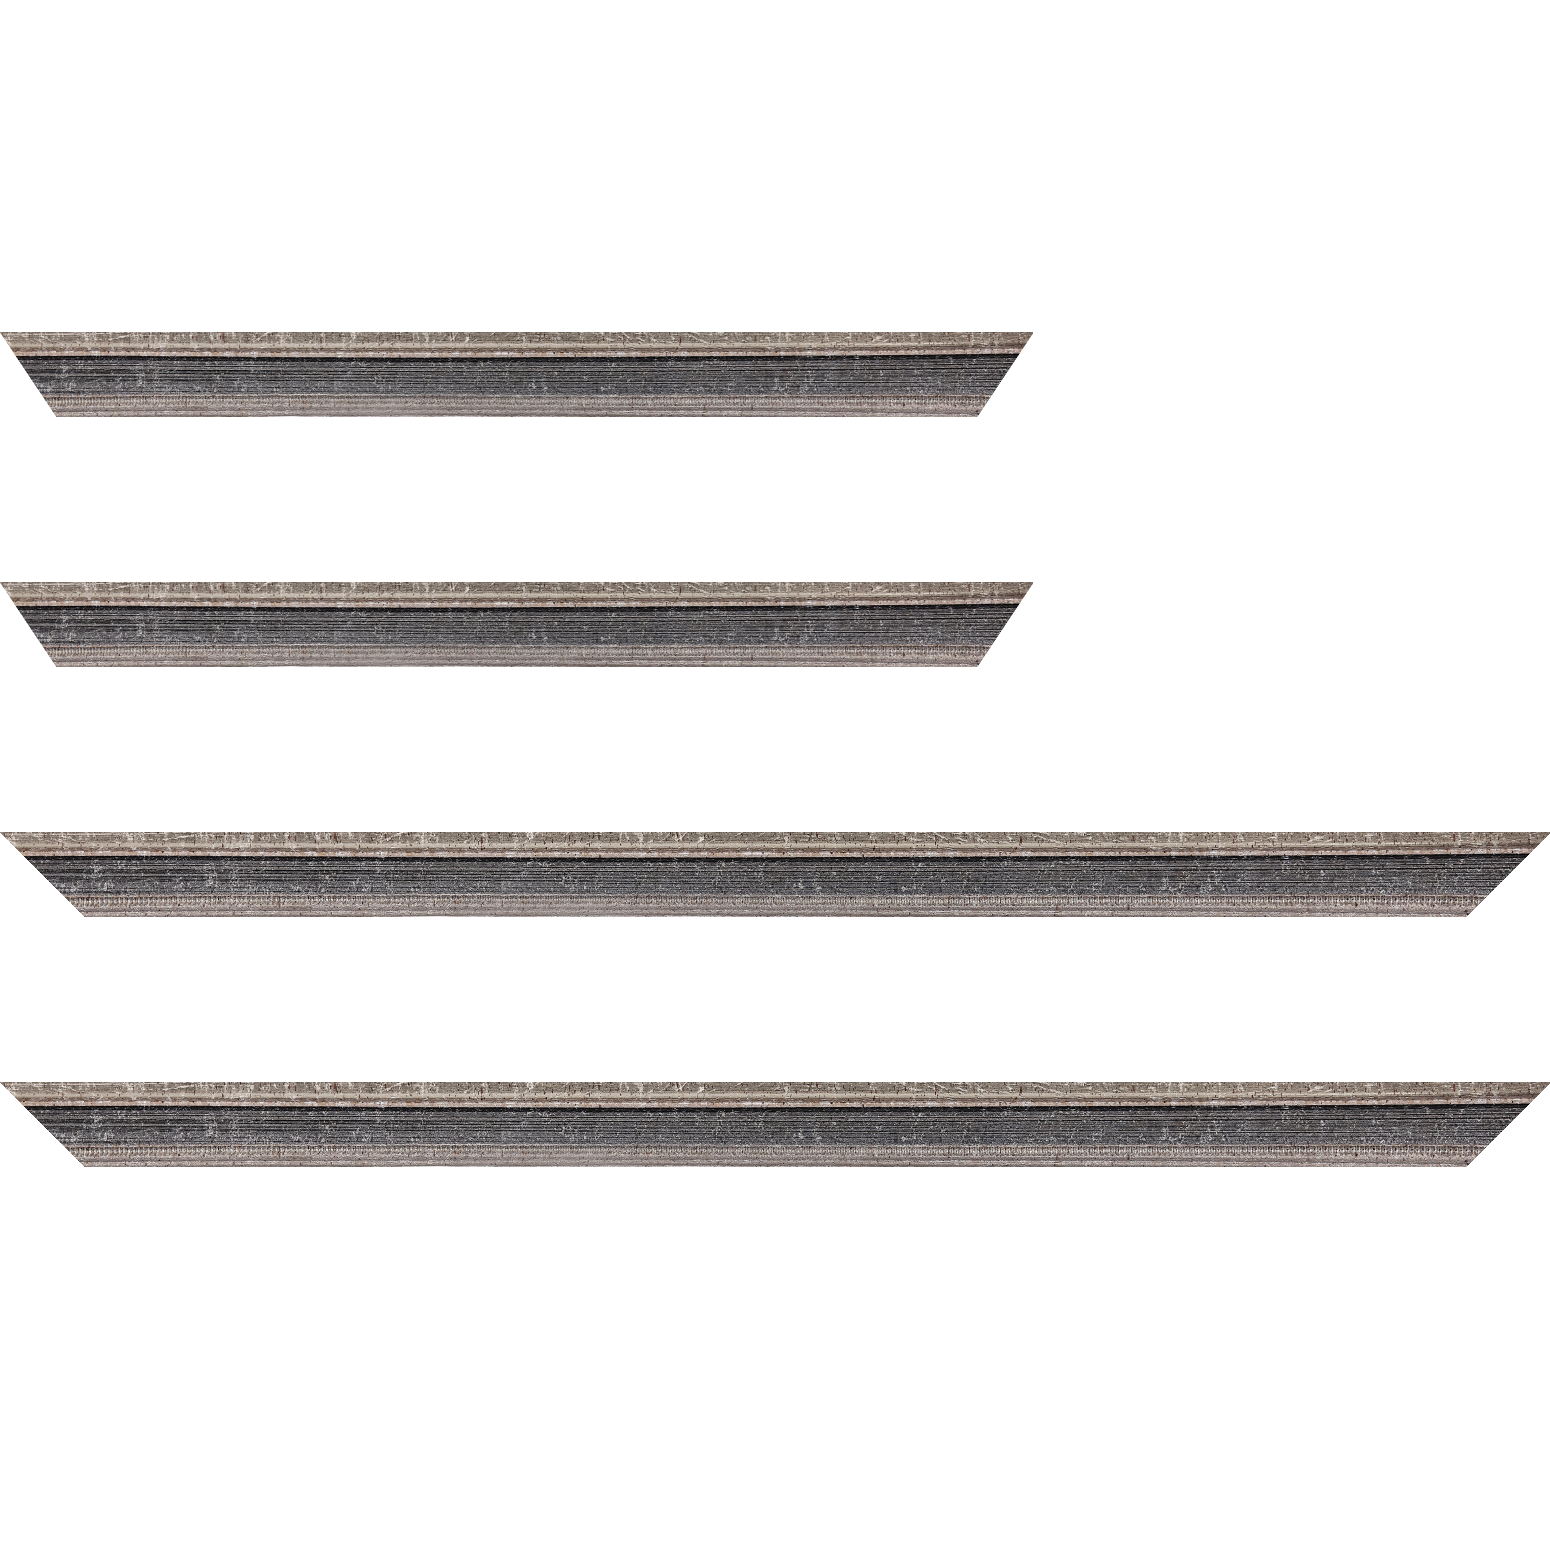 Baguette bois profil incurvé largeur 2.4cm argent antique gorge gris noirci vieilli filet perle argent - 28x34